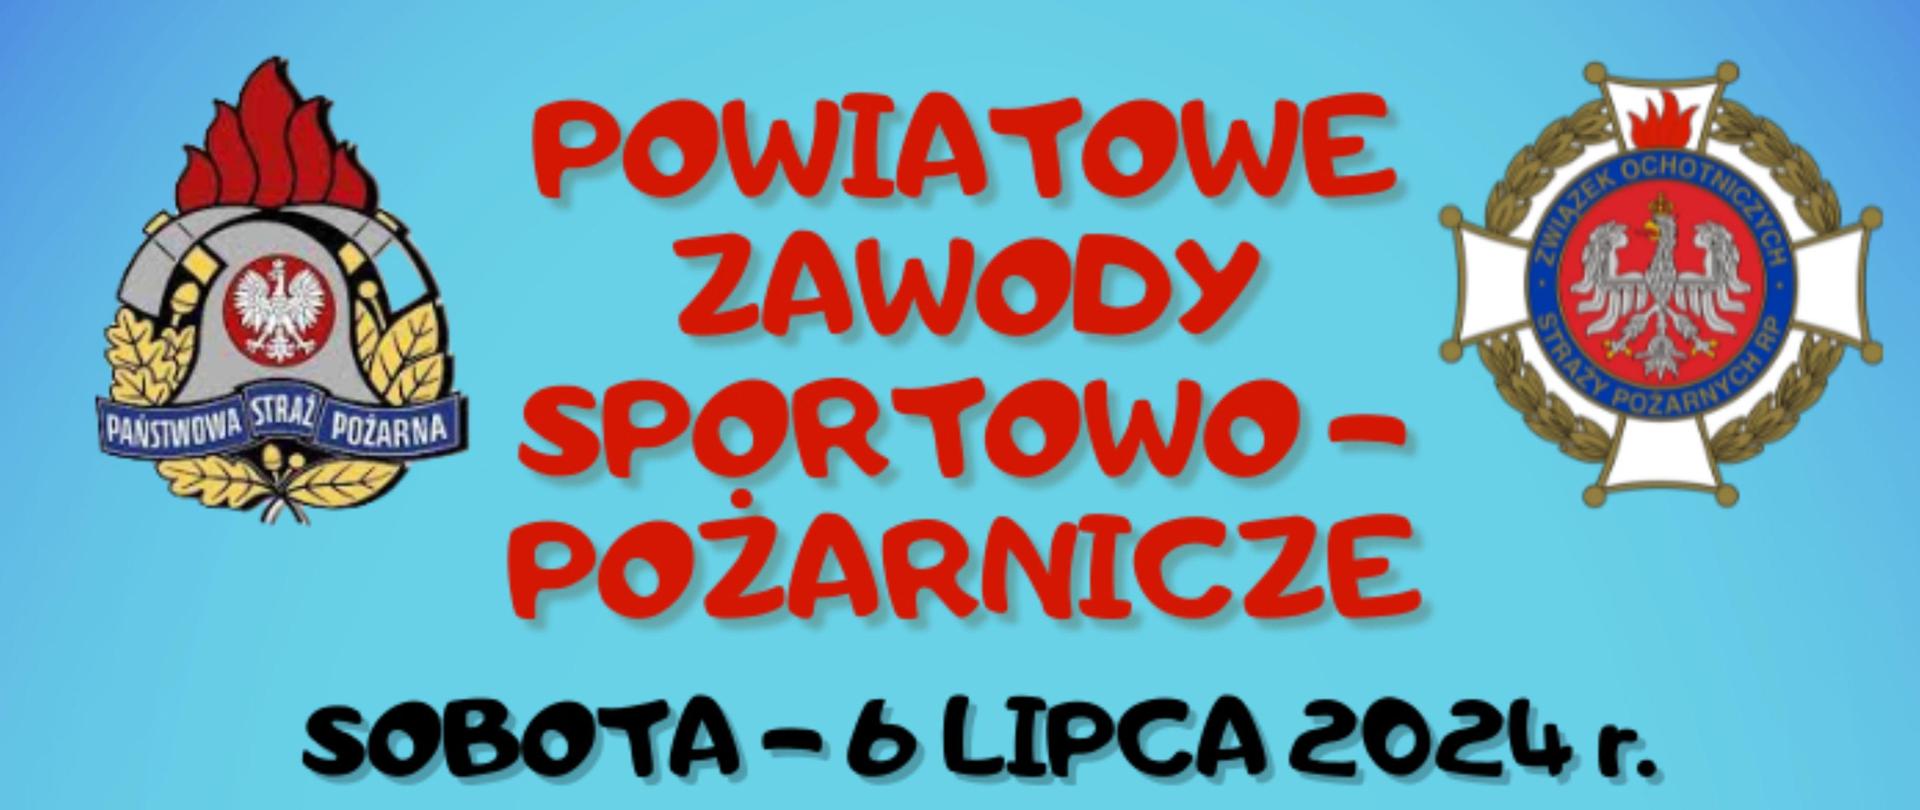 Powiatowe Zawody Sportowo- Pożarnicze